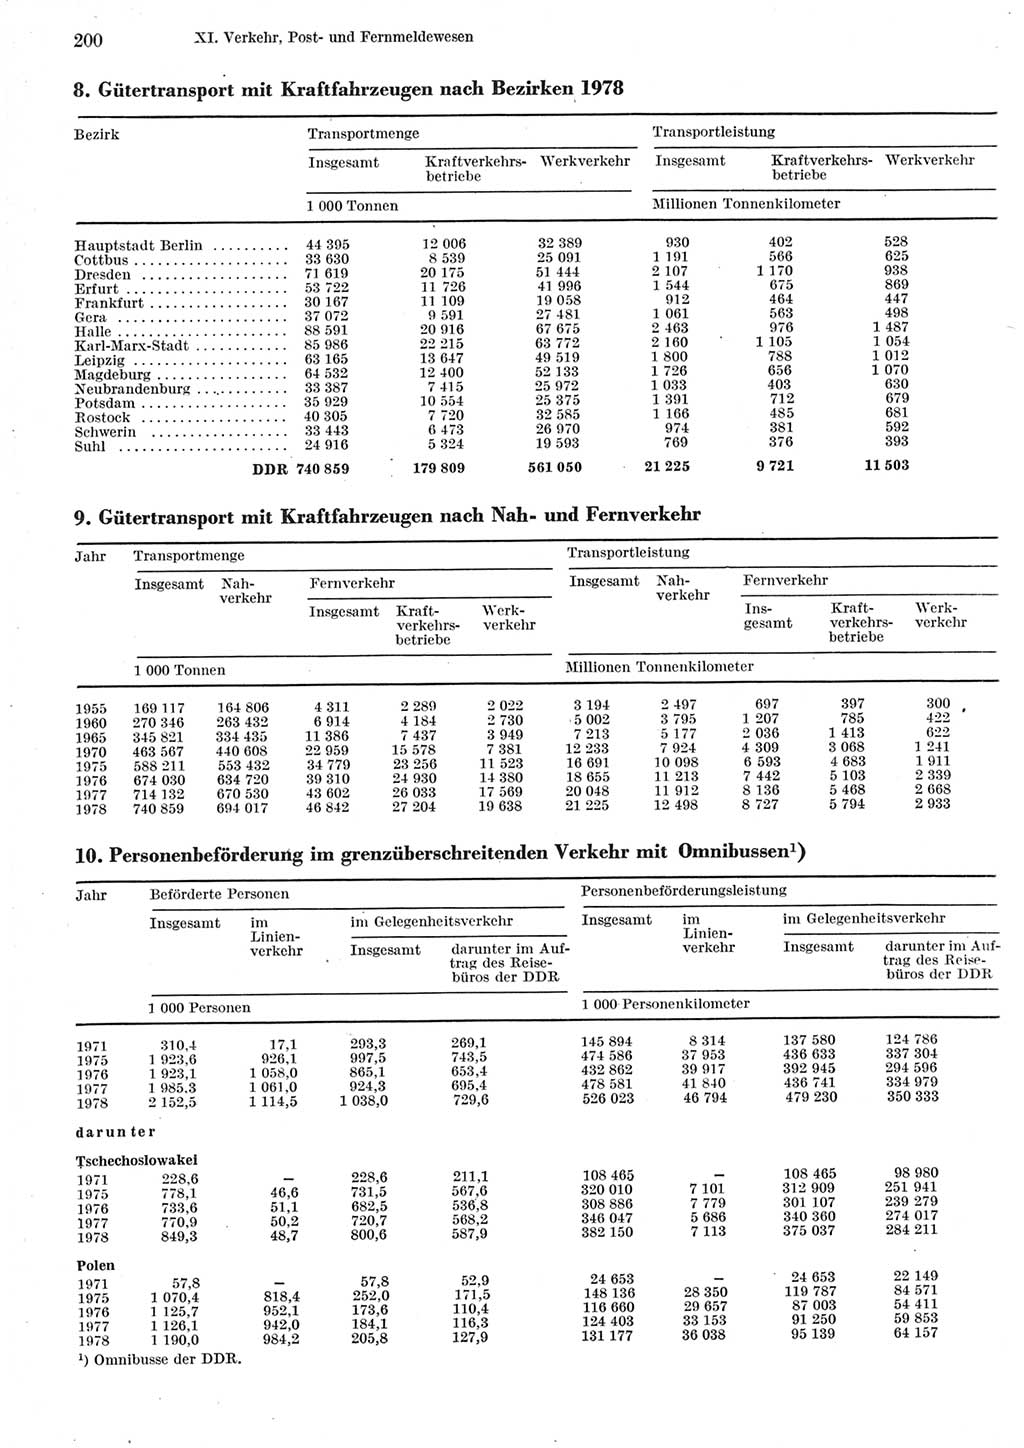 Statistisches Jahrbuch der Deutschen Demokratischen Republik (DDR) 1979, Seite 200 (Stat. Jb. DDR 1979, S. 200)